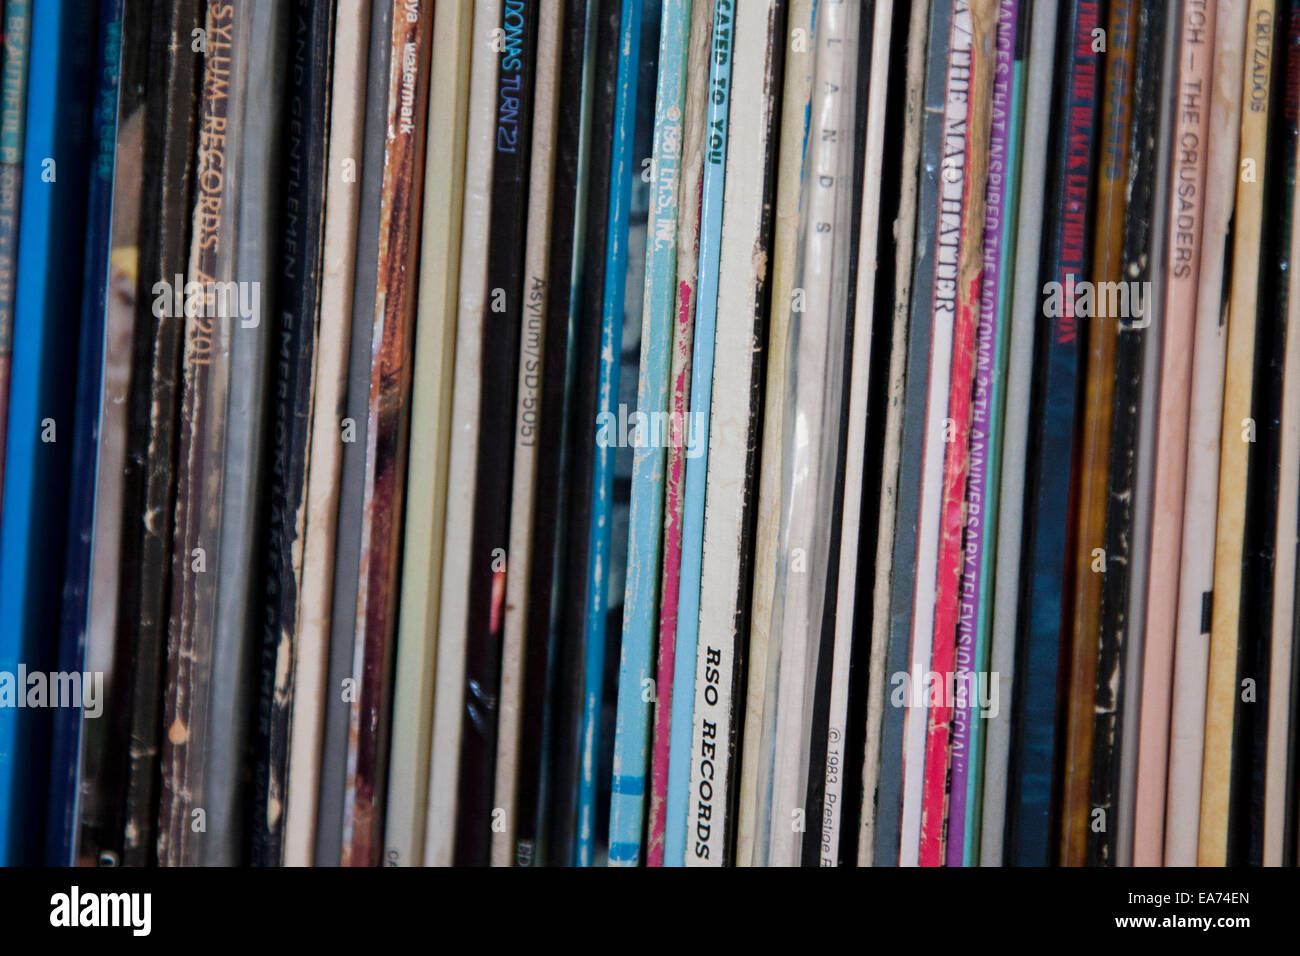 Vinyl Schallplatten auf einem Regal Stockfotografie - Alamy